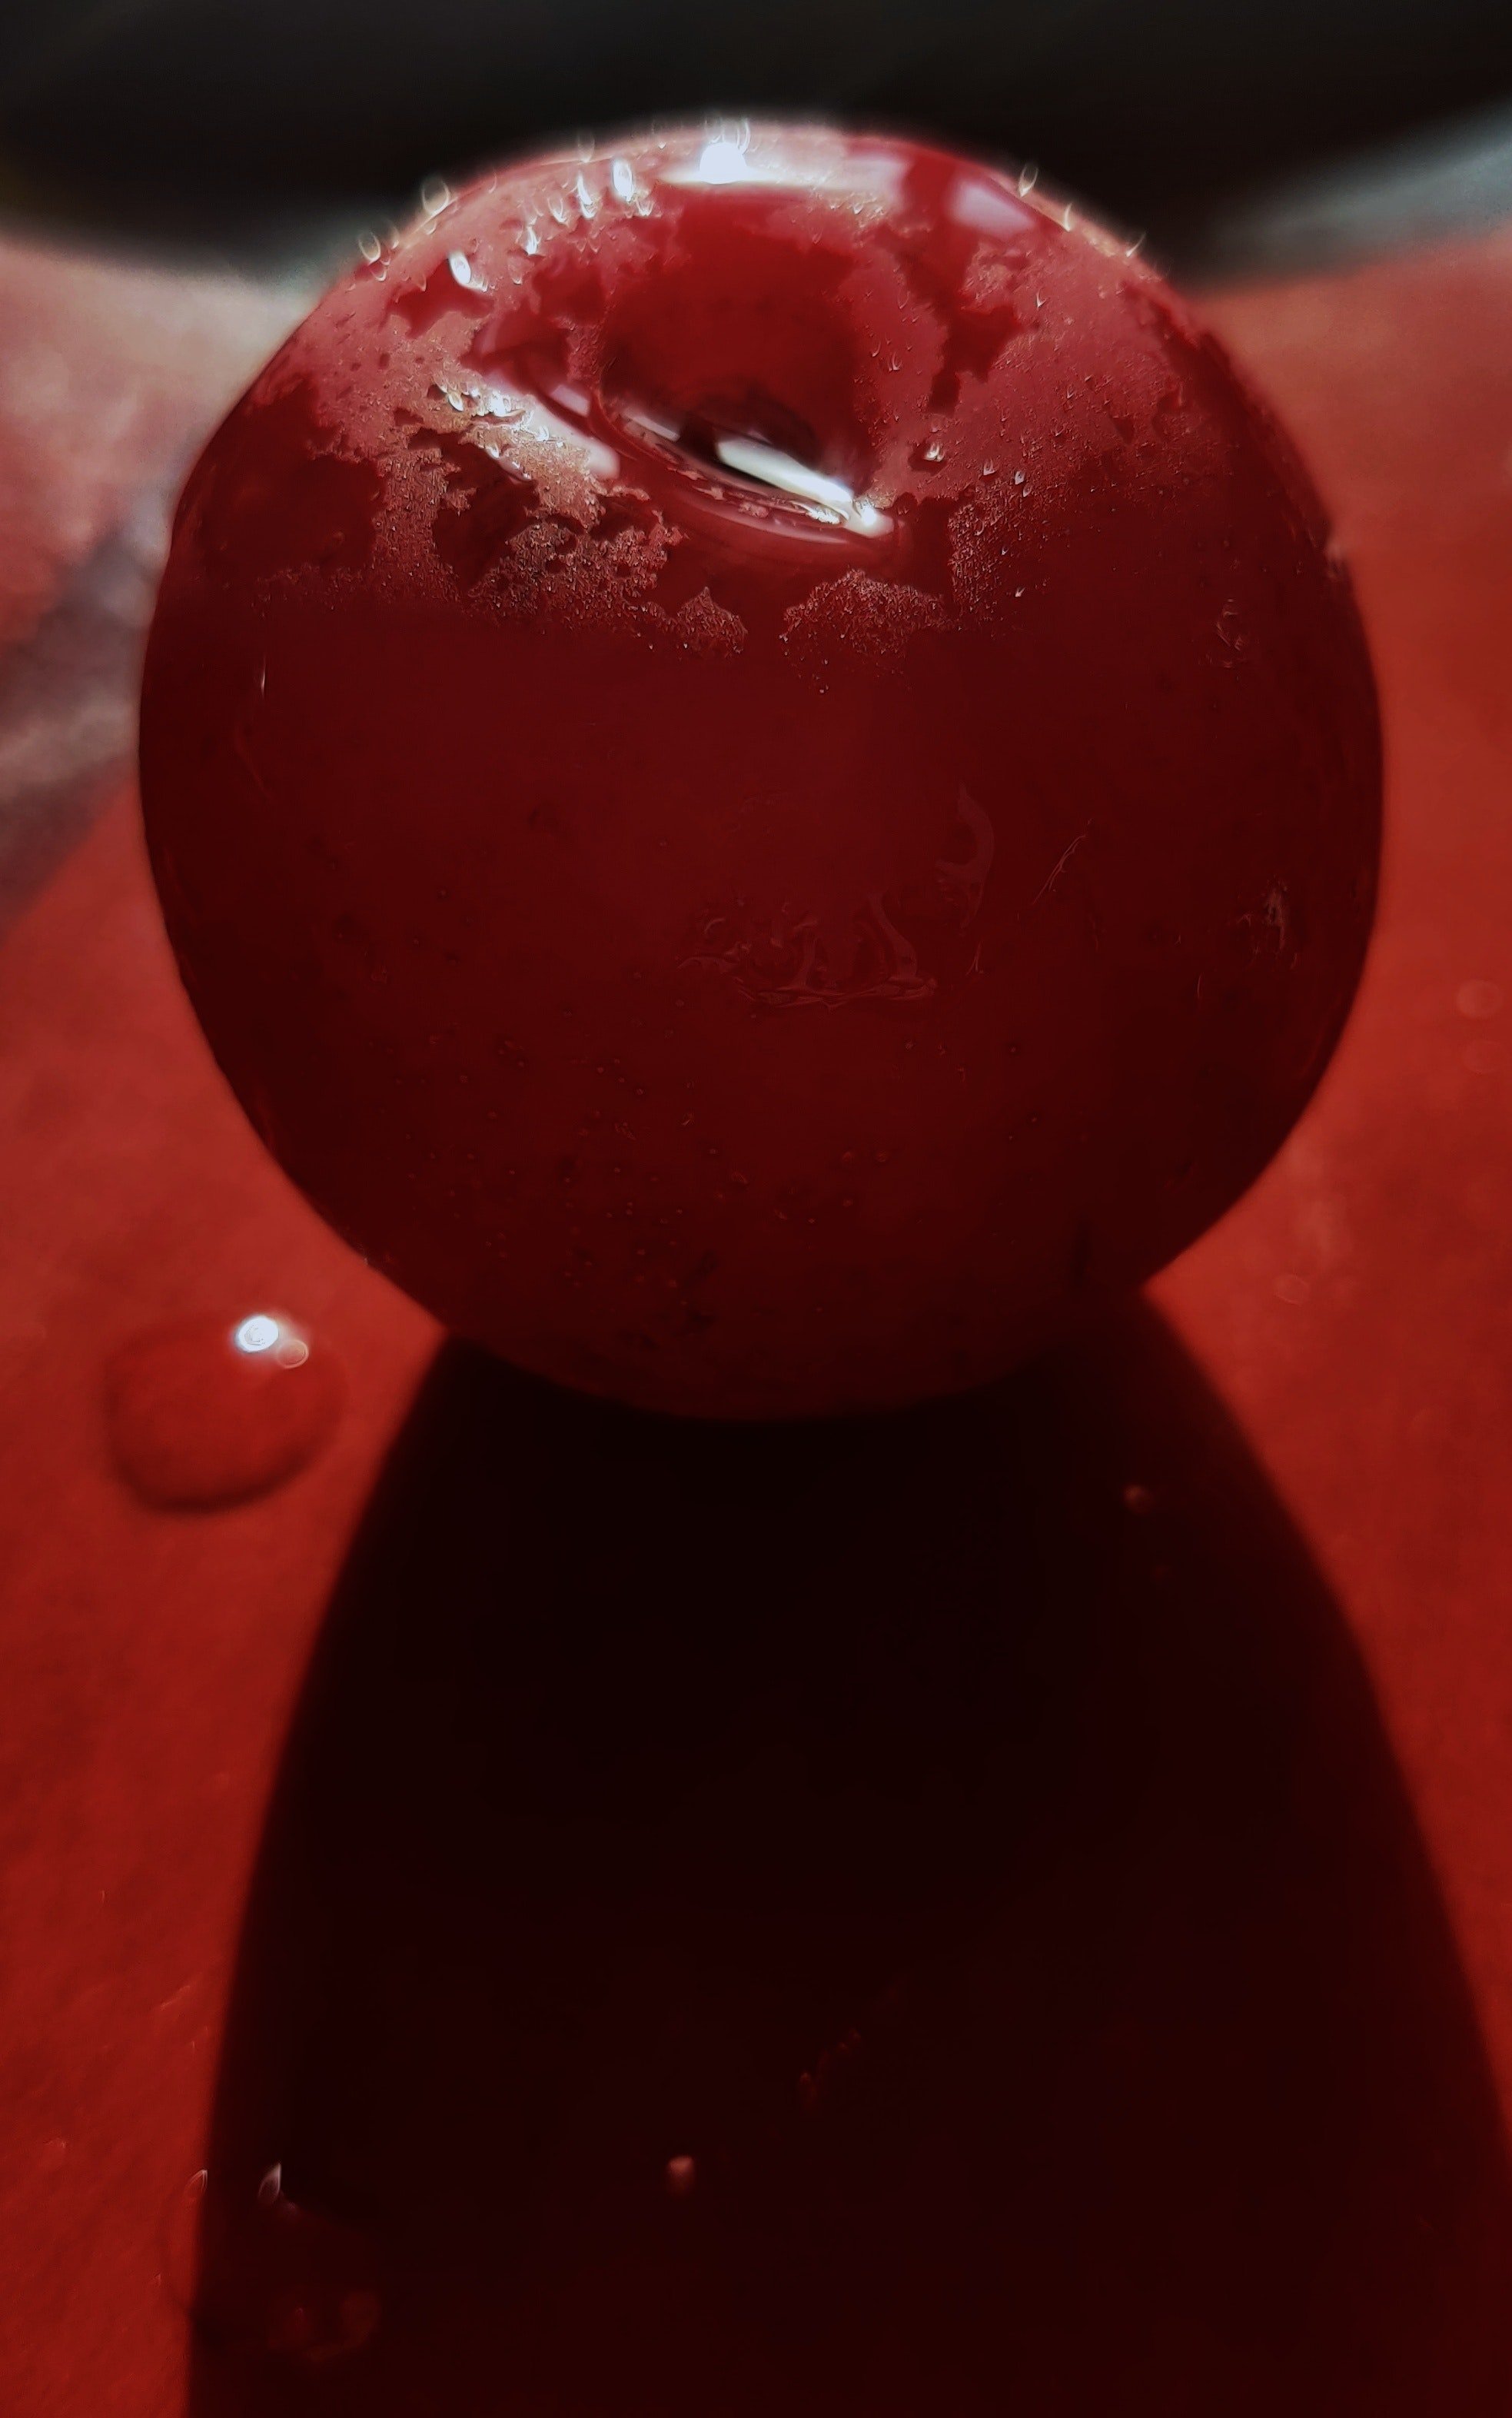 Sie bot ihm einen ihrer Äpfel an, damit sie ihn wie in alten Zeiten gemeinsam essen konnten. | Quelle: Pexels